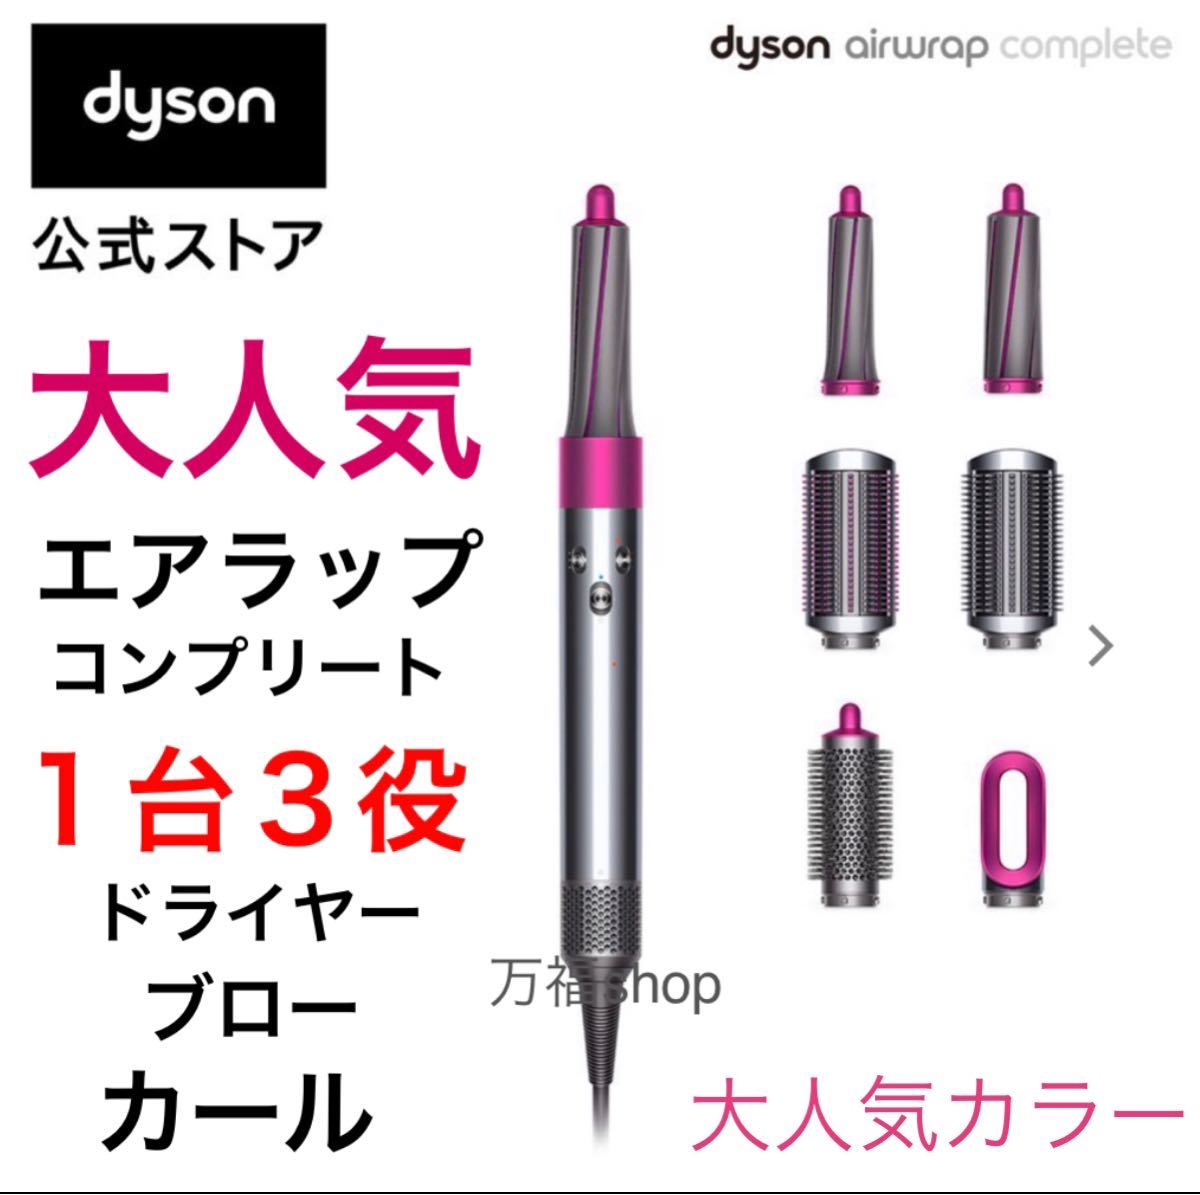 エアラップ【ほぼ未使用品】Dyson Air wrap Complete 限定 ダイソン